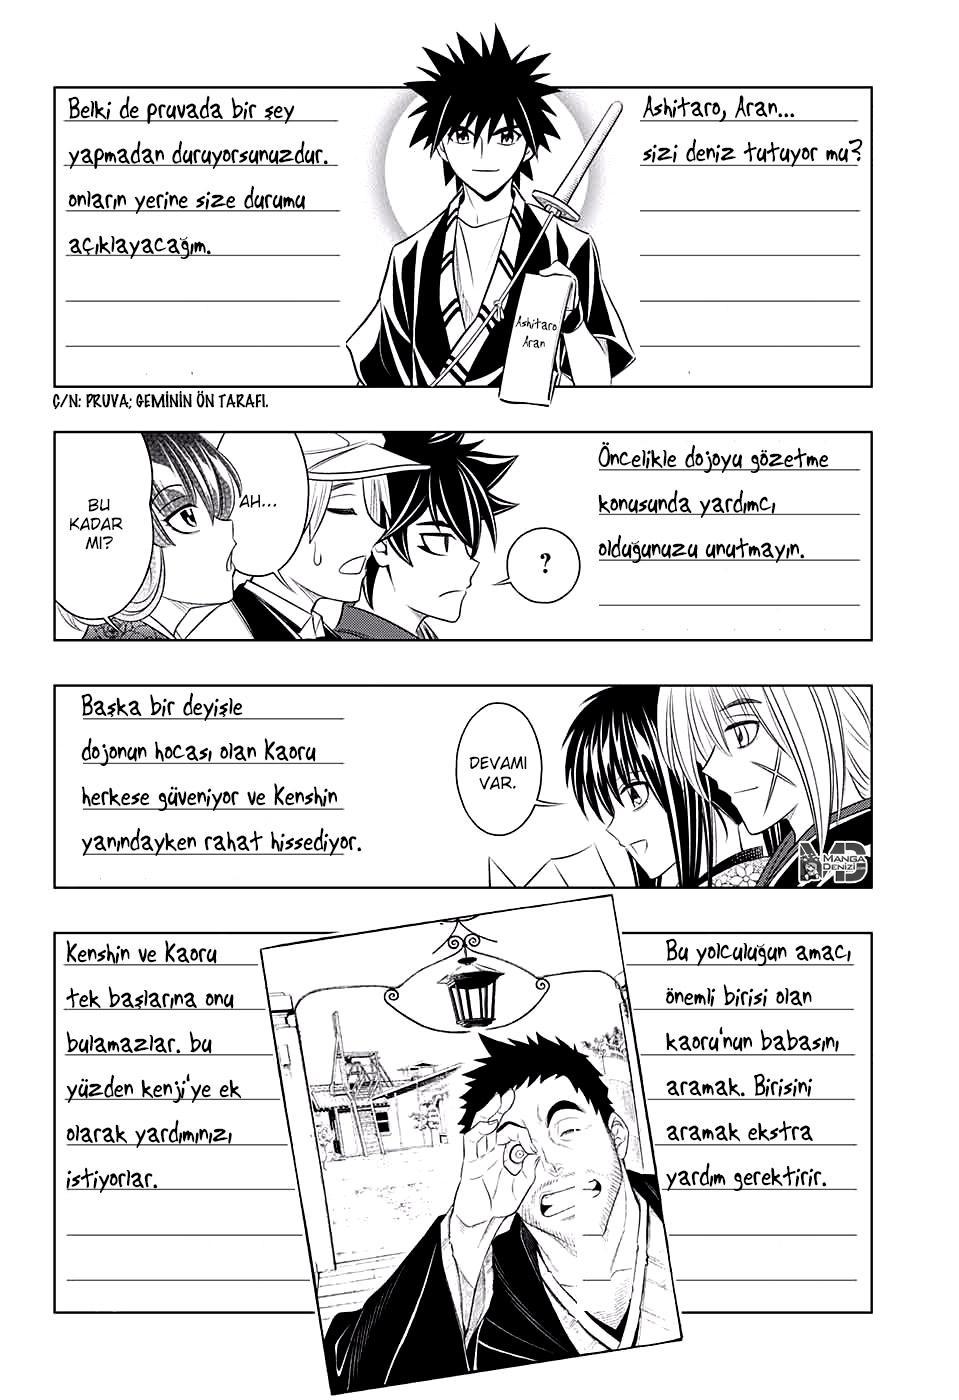 Rurouni Kenshin: Hokkaido Arc mangasının 04 bölümünün 3. sayfasını okuyorsunuz.